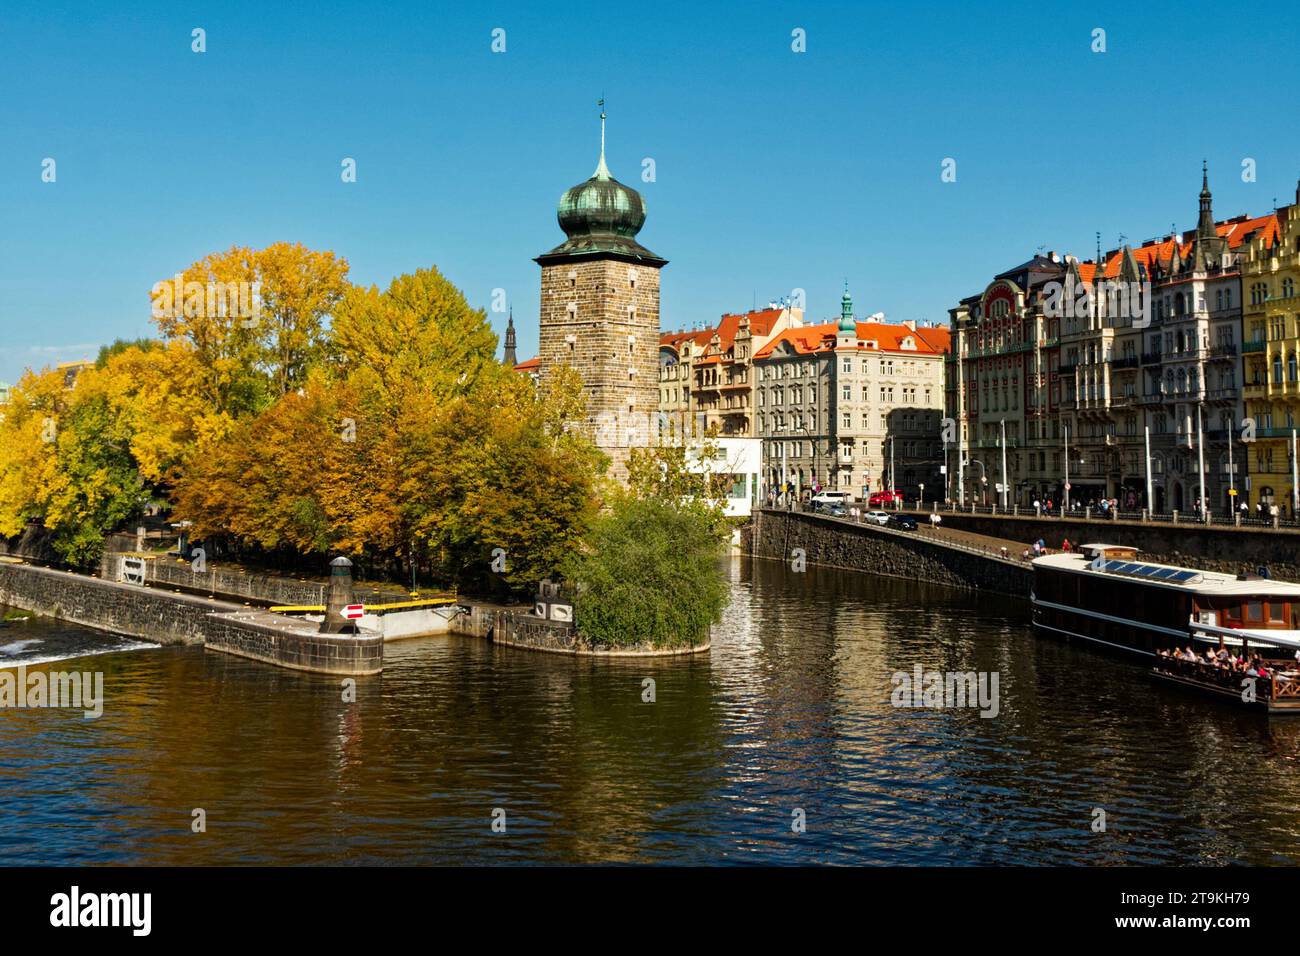 Una scena fluviale con una torre a cupola verde sulla riva sinistra e colorati edifici sulla destra. Antica torre sulla riva del fiume in autunno. Autunno Pragu Foto Stock